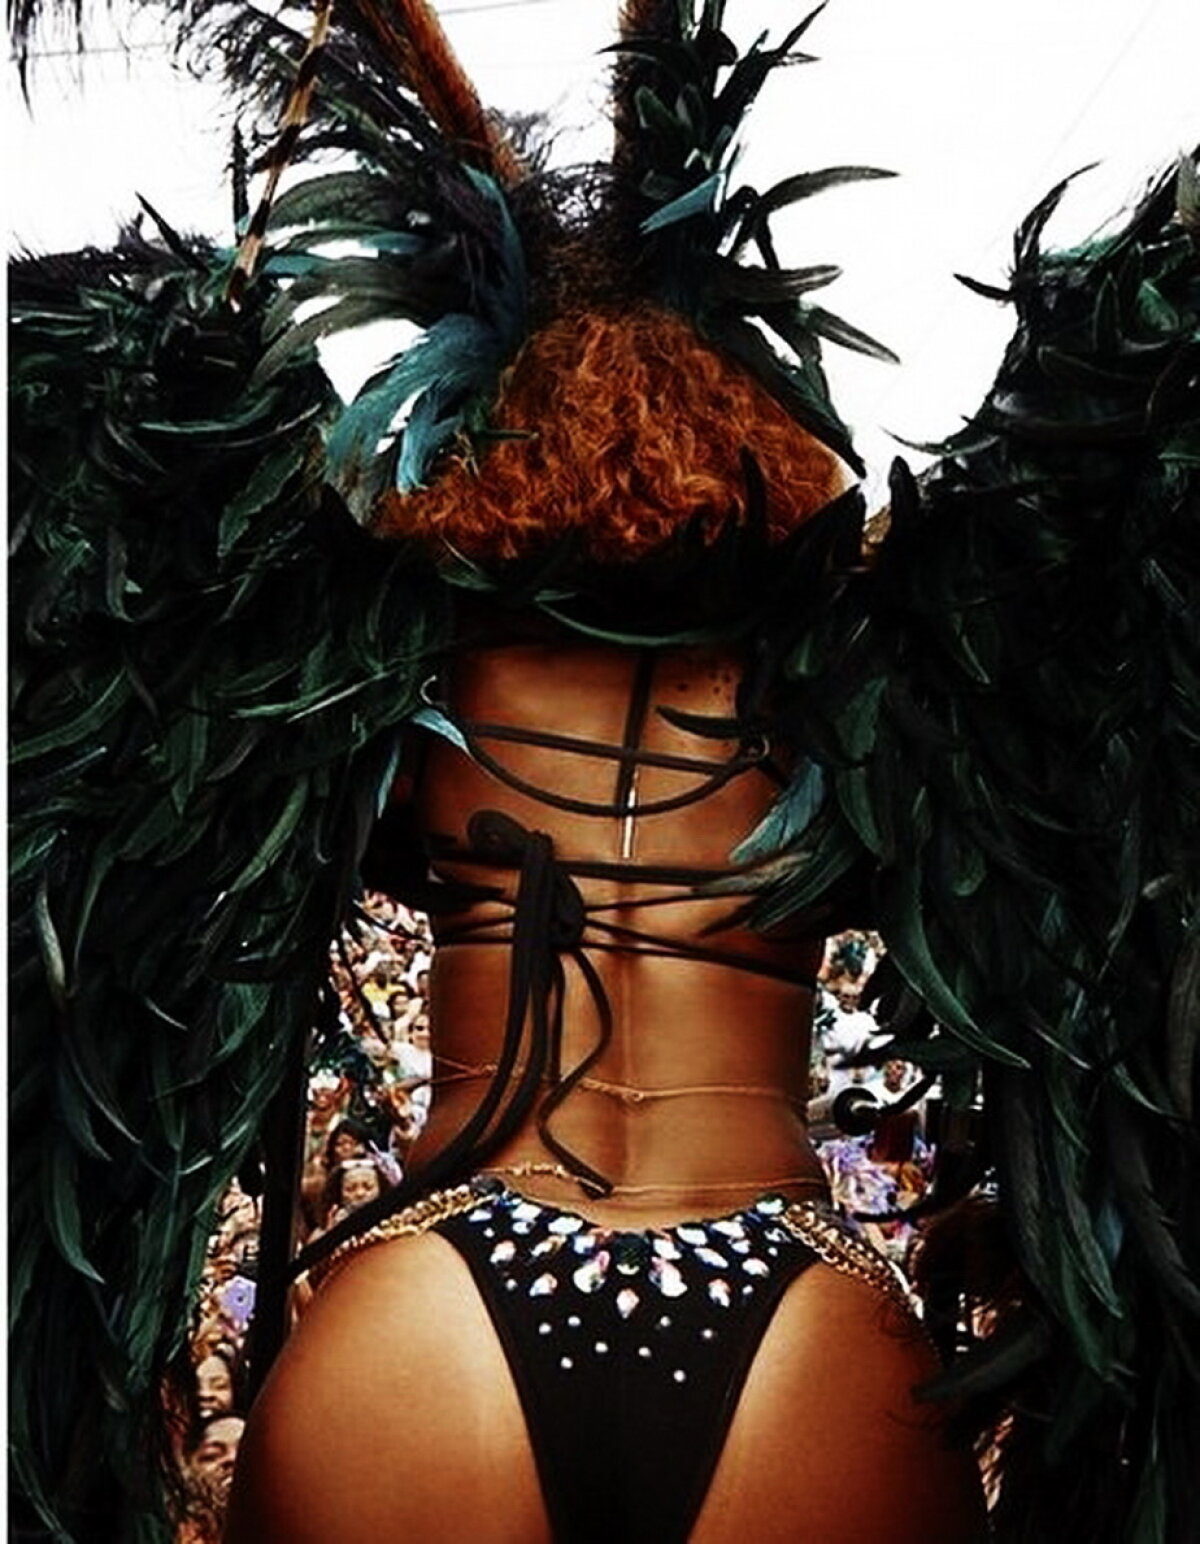 Mai sexy de atît nu este posibil! Uite cum a ieșit Rihanna pe străzile din Barbados